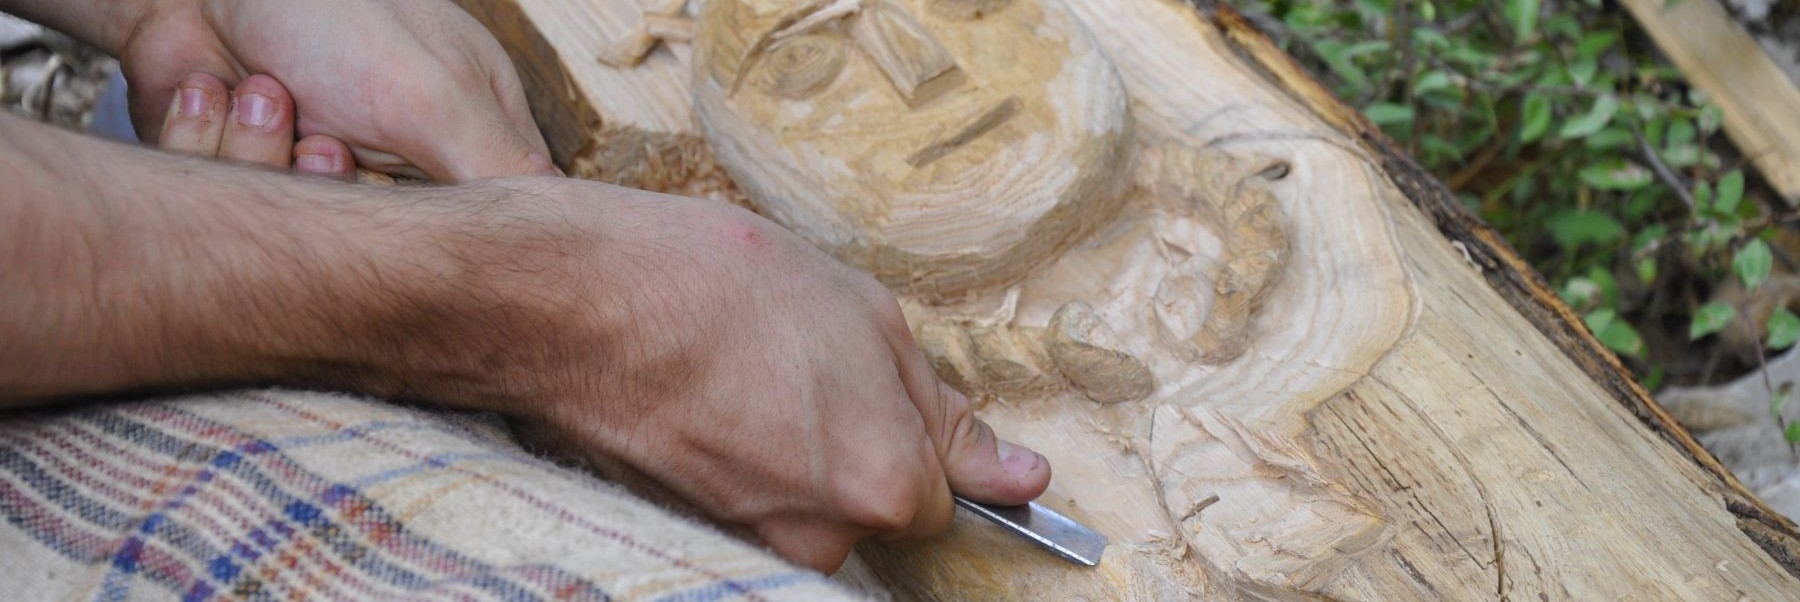 Randa Ardesca Archéosite d'Ardèche - Sculpture sur bois